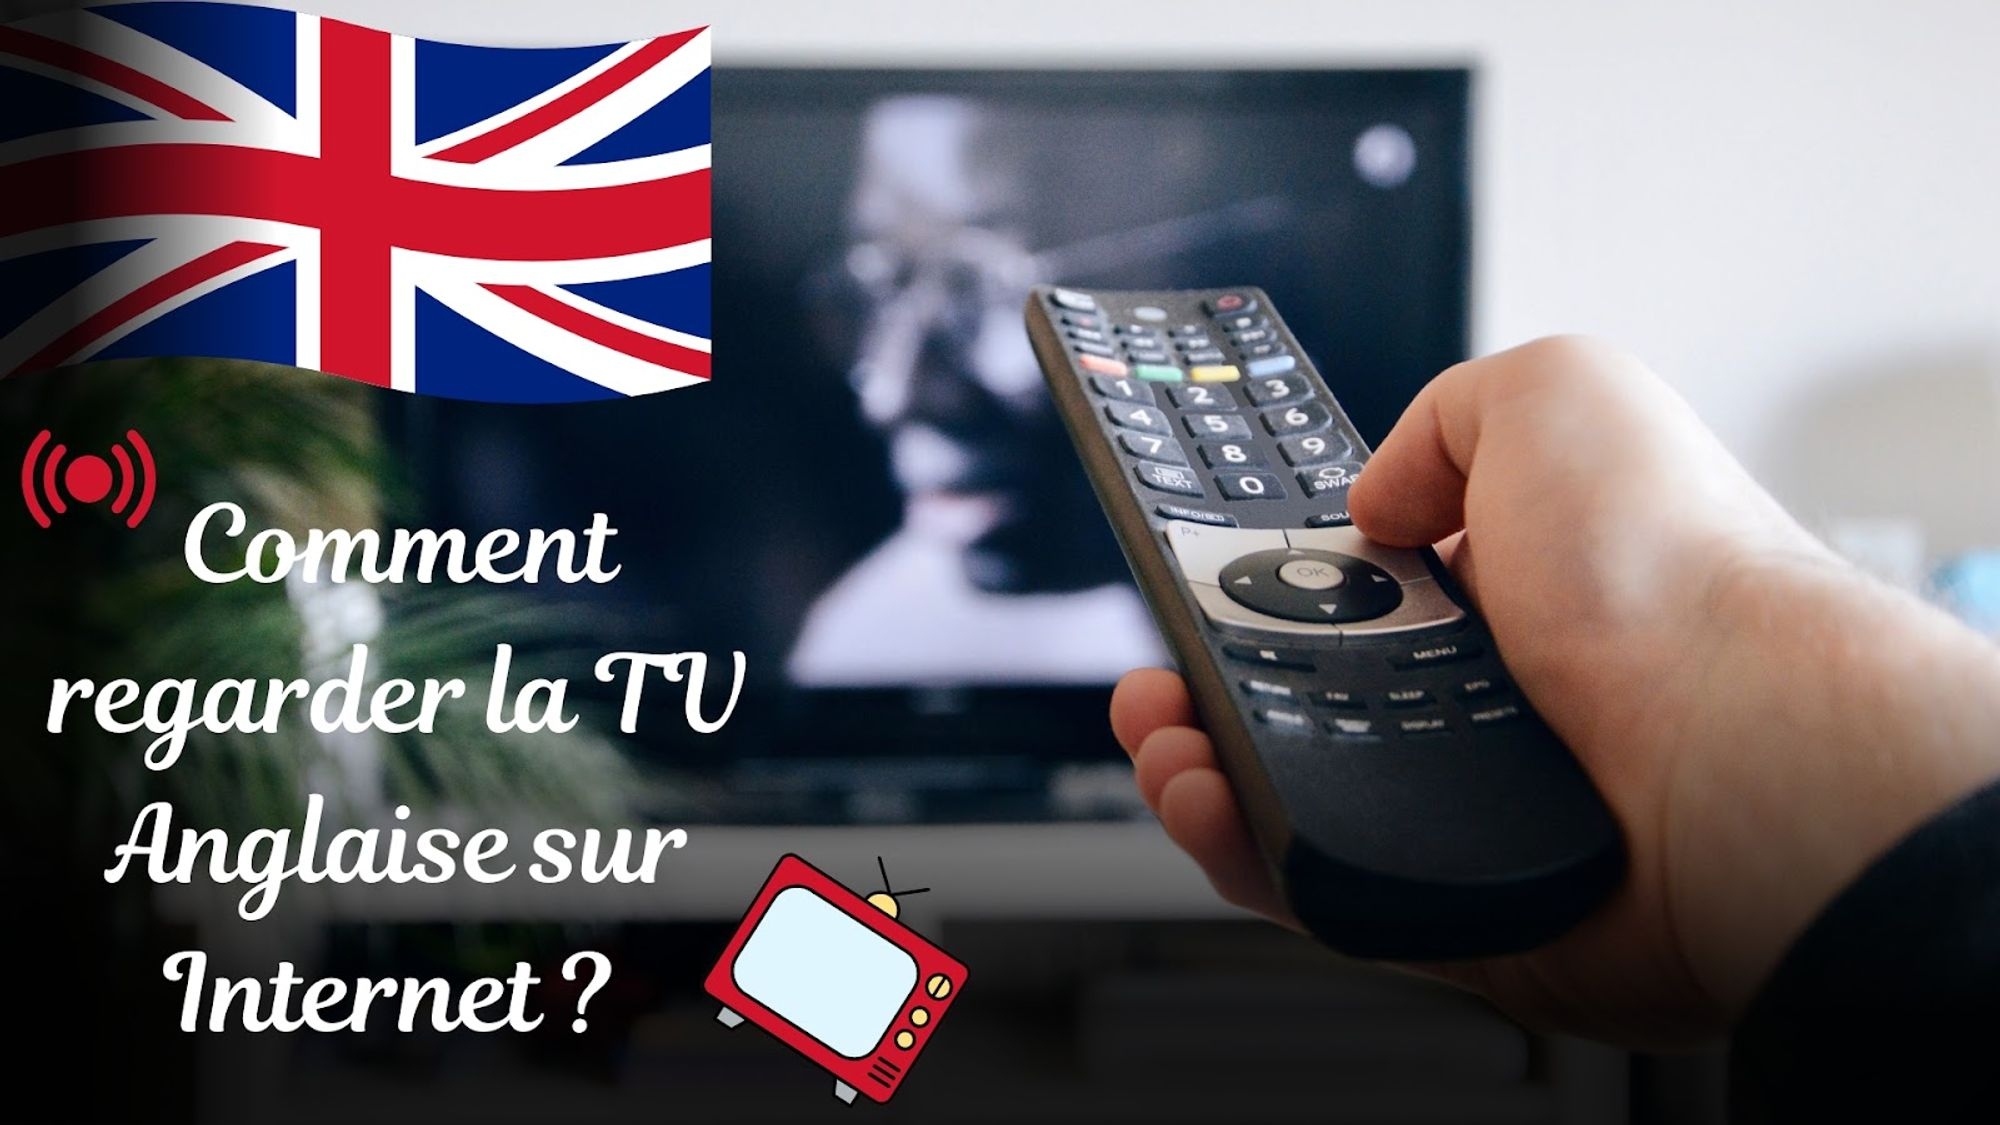 Découvrez comment regarder la télévision anglaise sur Internet en France